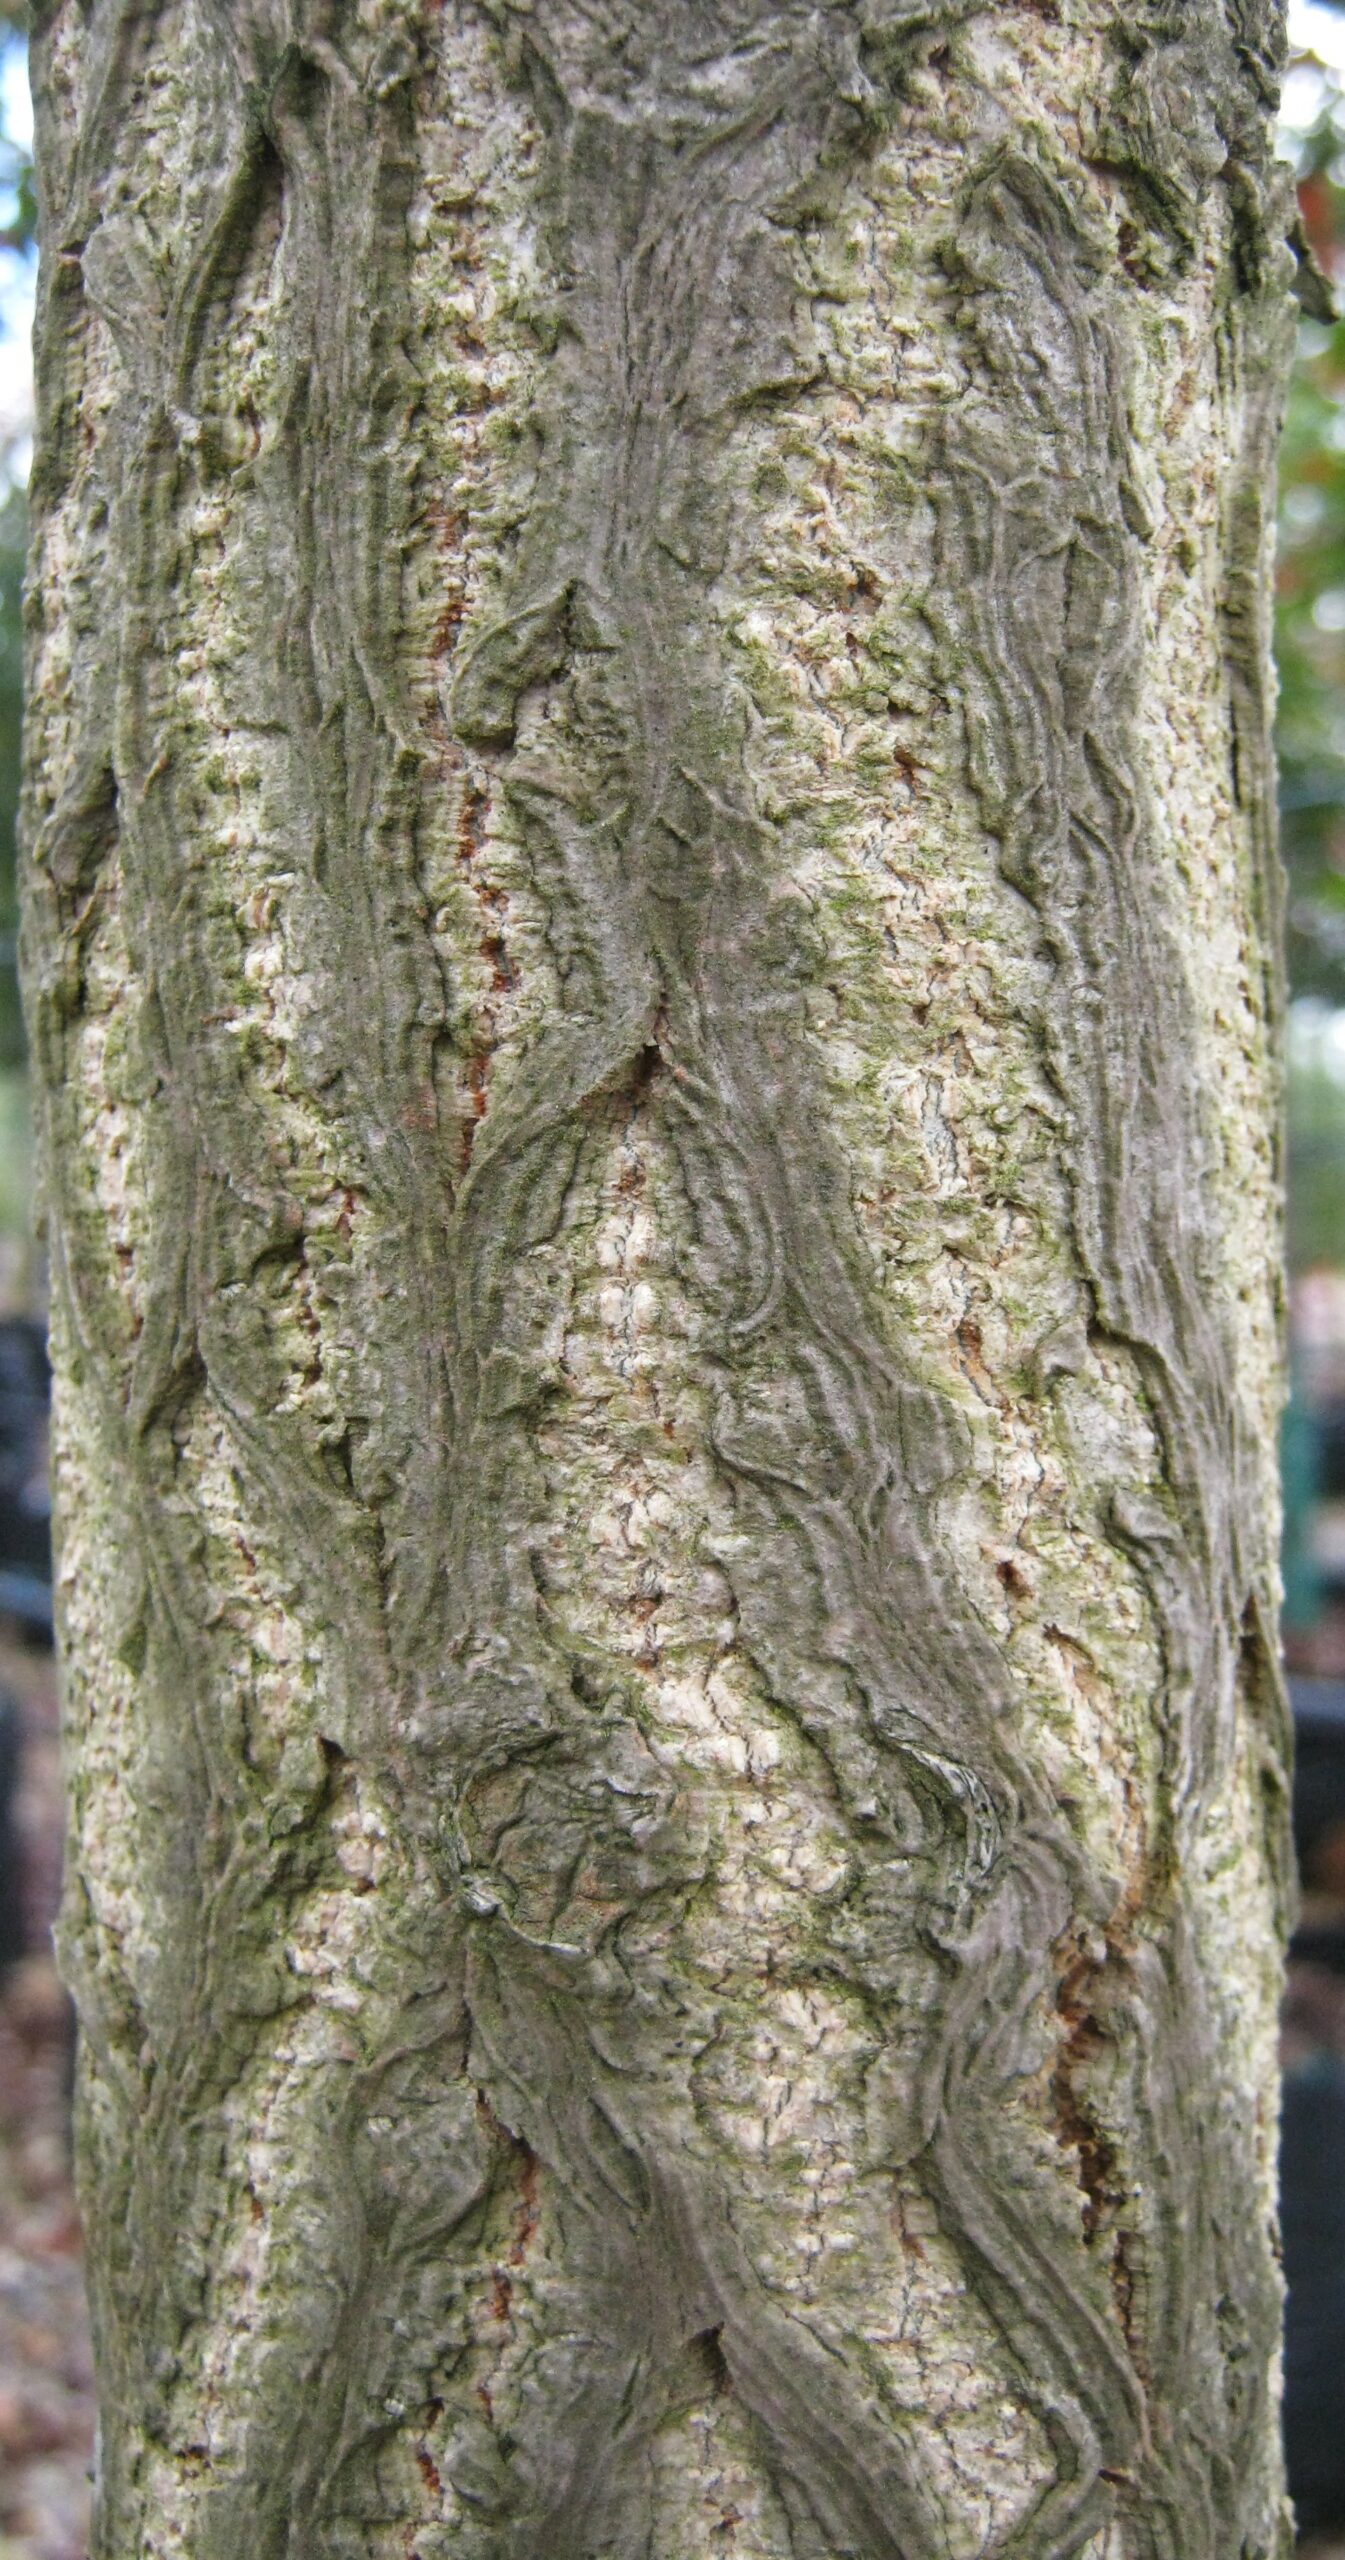 Ginkgo Biloba tree bark